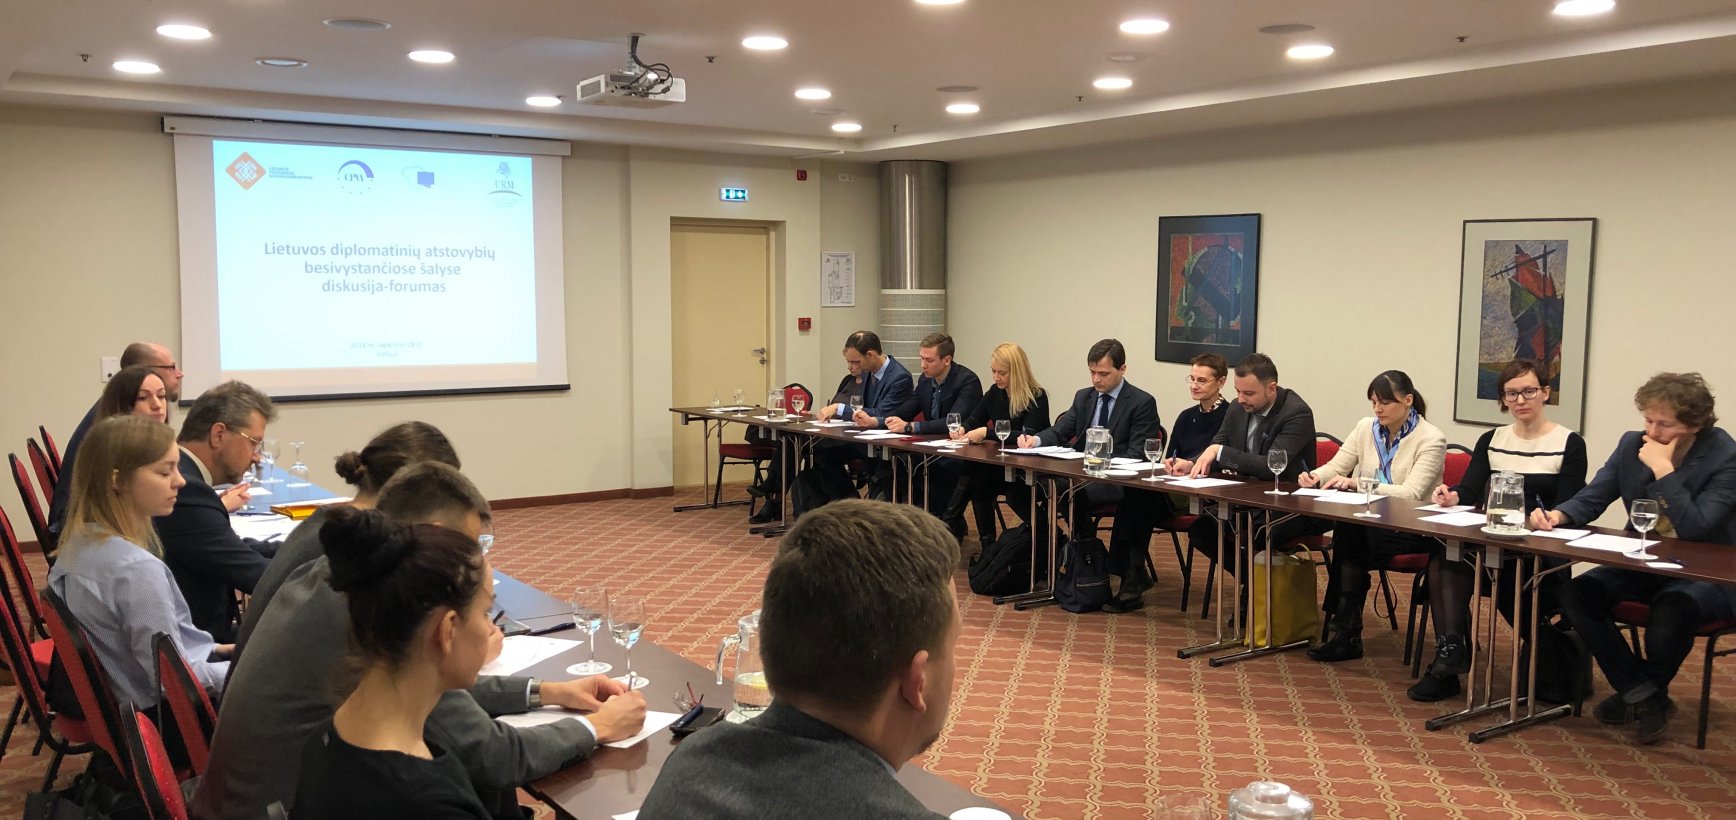 Lietuvos vystomojo bendradarbiavimo veiklas koordinuojantys darbuotojai dalyvavo diskusijoje-forume 